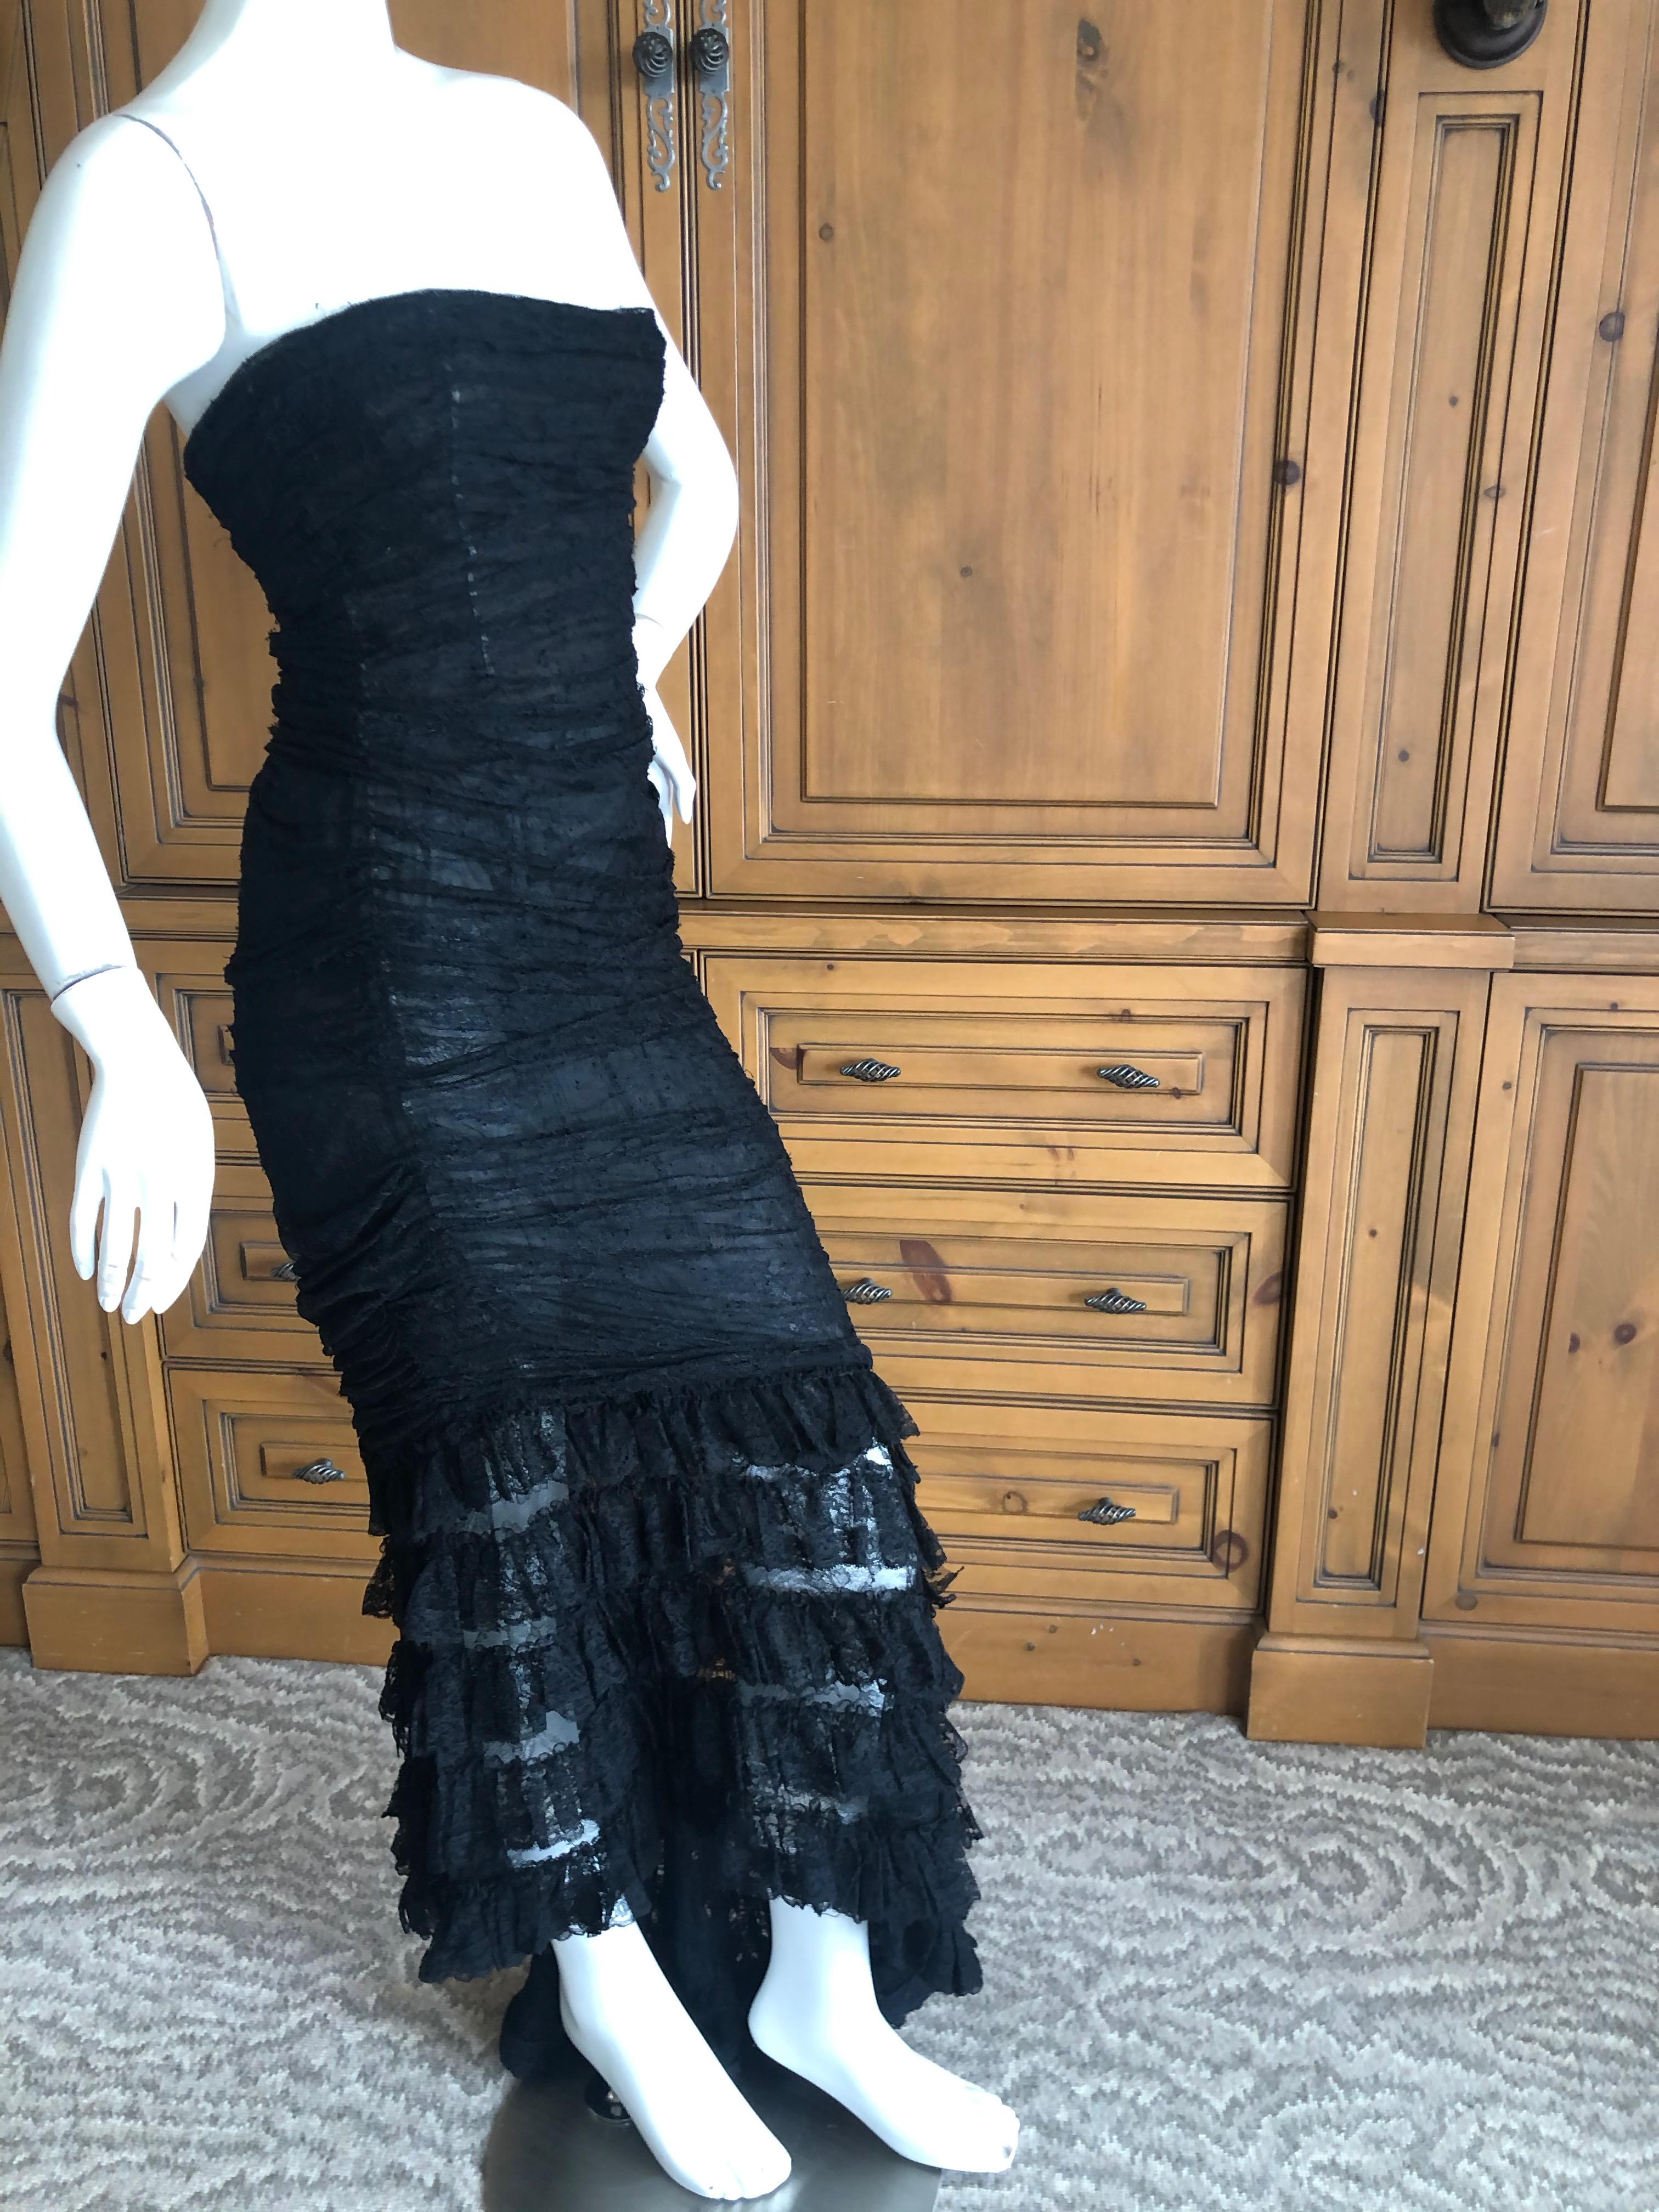  Oscar de la Renta Vintage 1980's Black Lace Evening Dress with Flamenco Ruffles For Sale 4